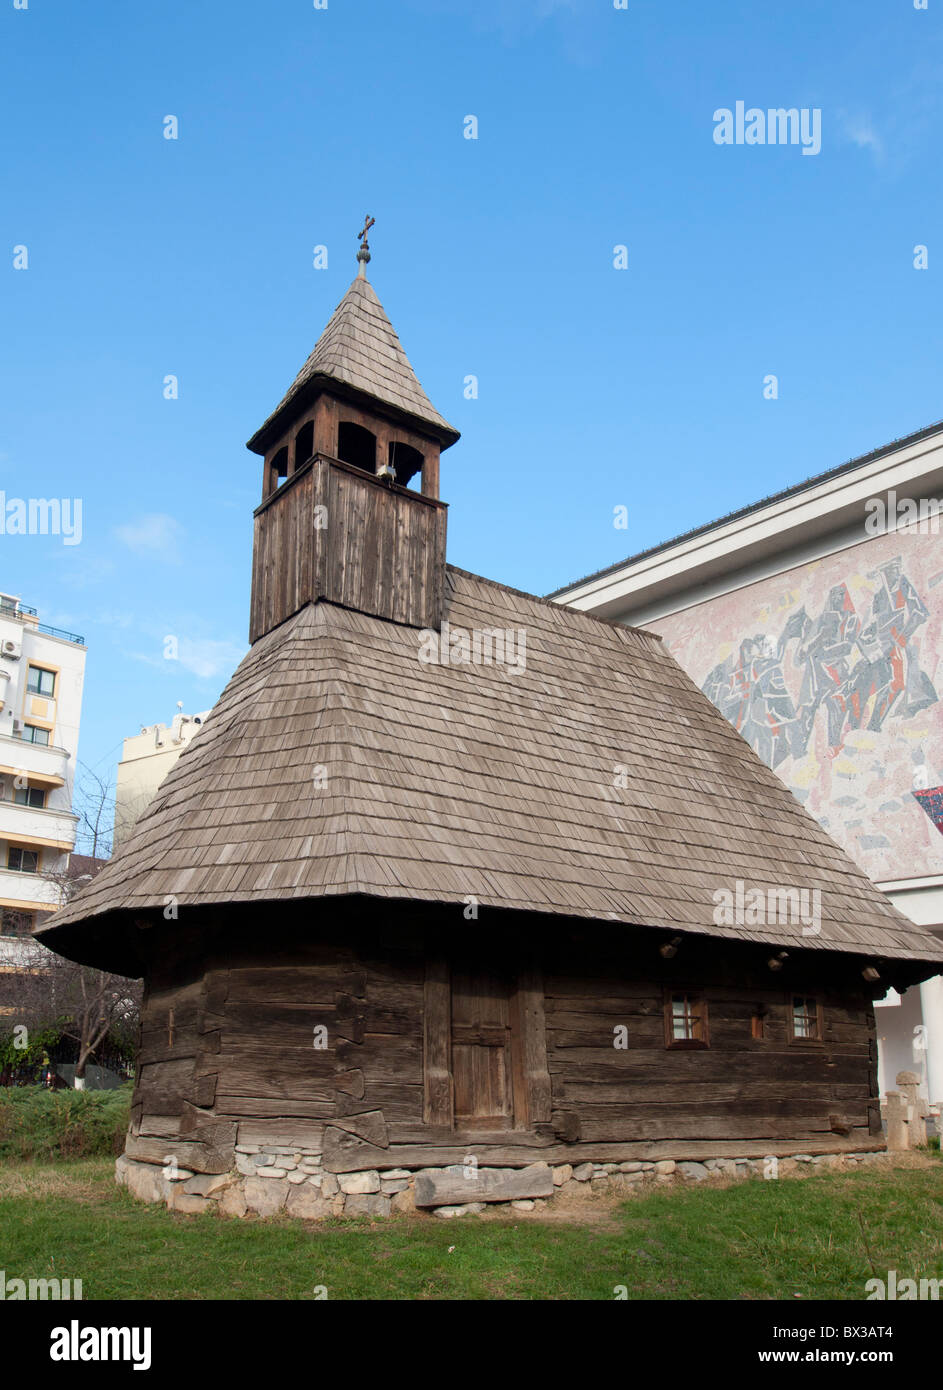 Vecchia chiesa di legno in mostra al Museo del contadino rumeno di Bucarest  Romania Foto stock - Alamy